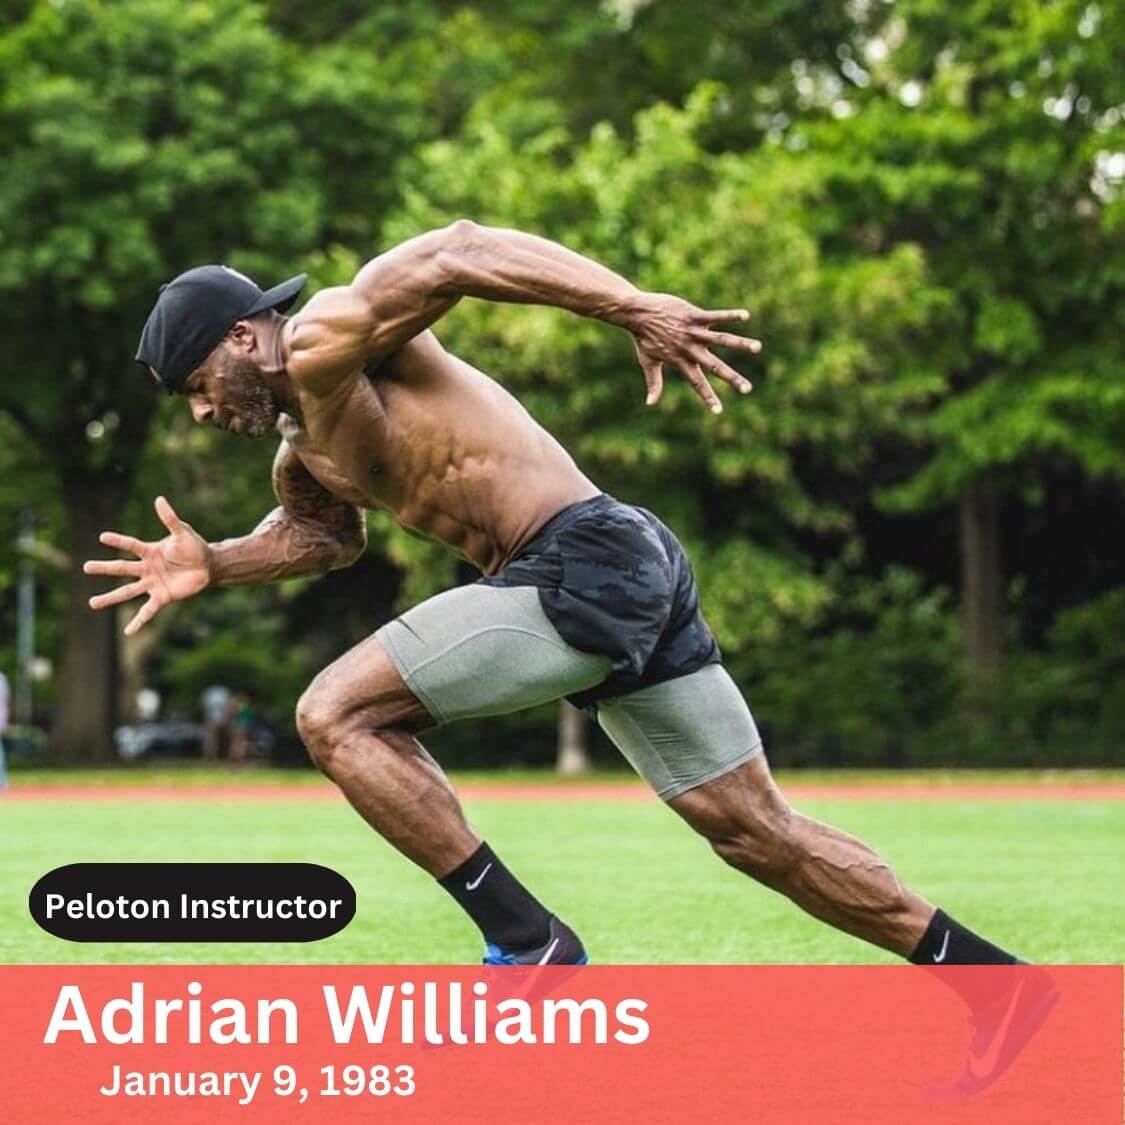 adrian williams peloton instructor